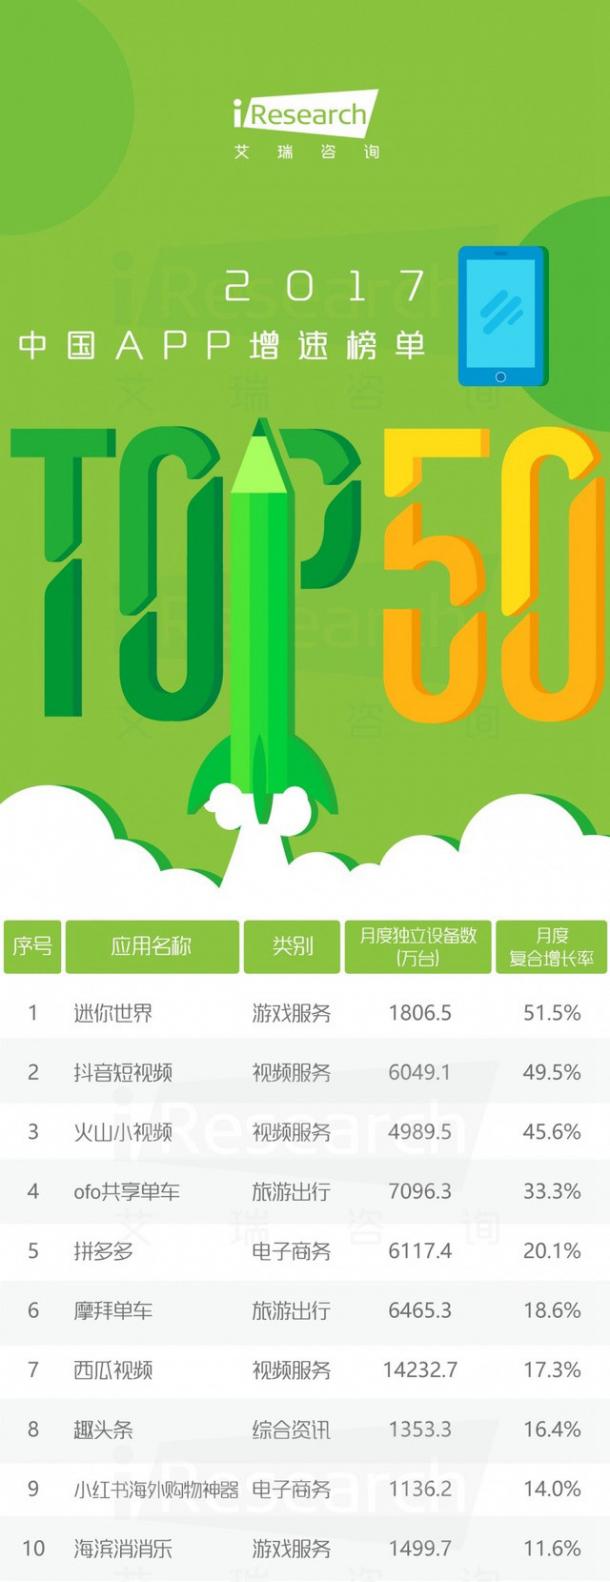 《迷你世界》跻身2017千万级APP增速TOP10